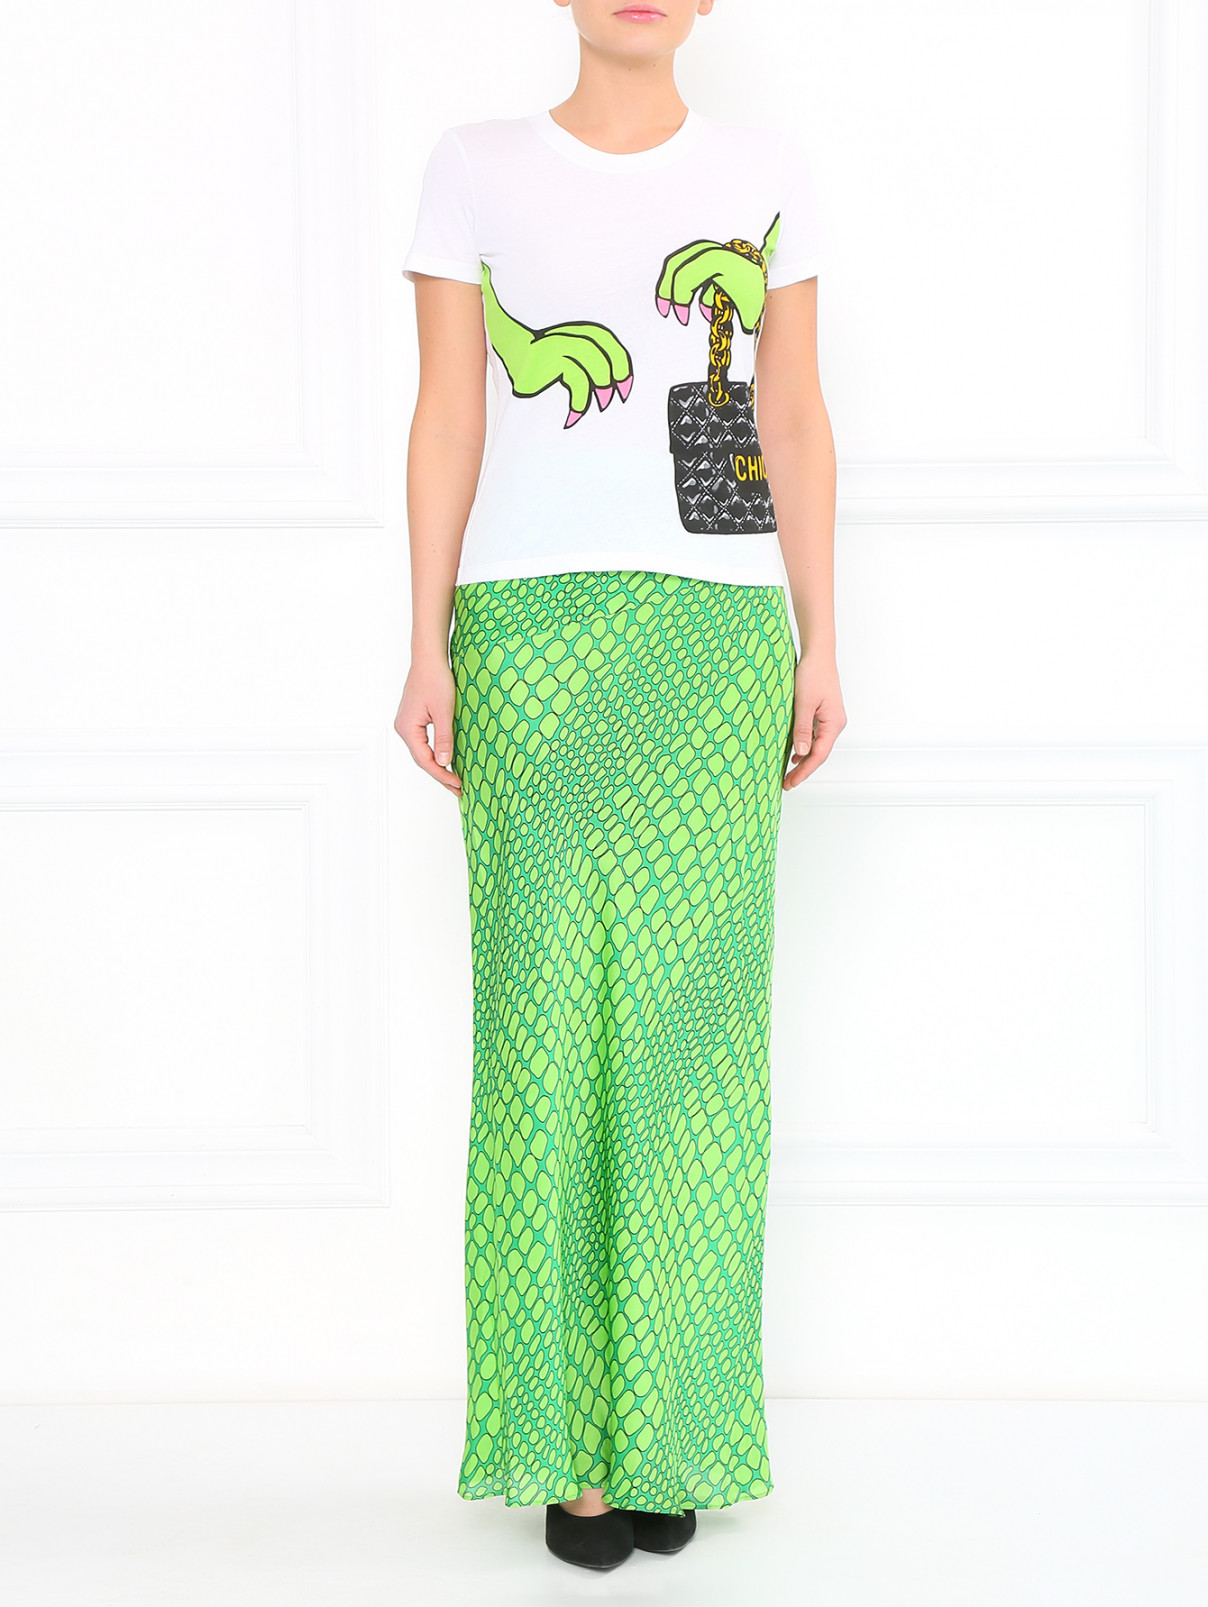 Шелковая юбка-макси Moschino Cheap&Chic  –  Модель Общий вид  – Цвет:  Зеленый